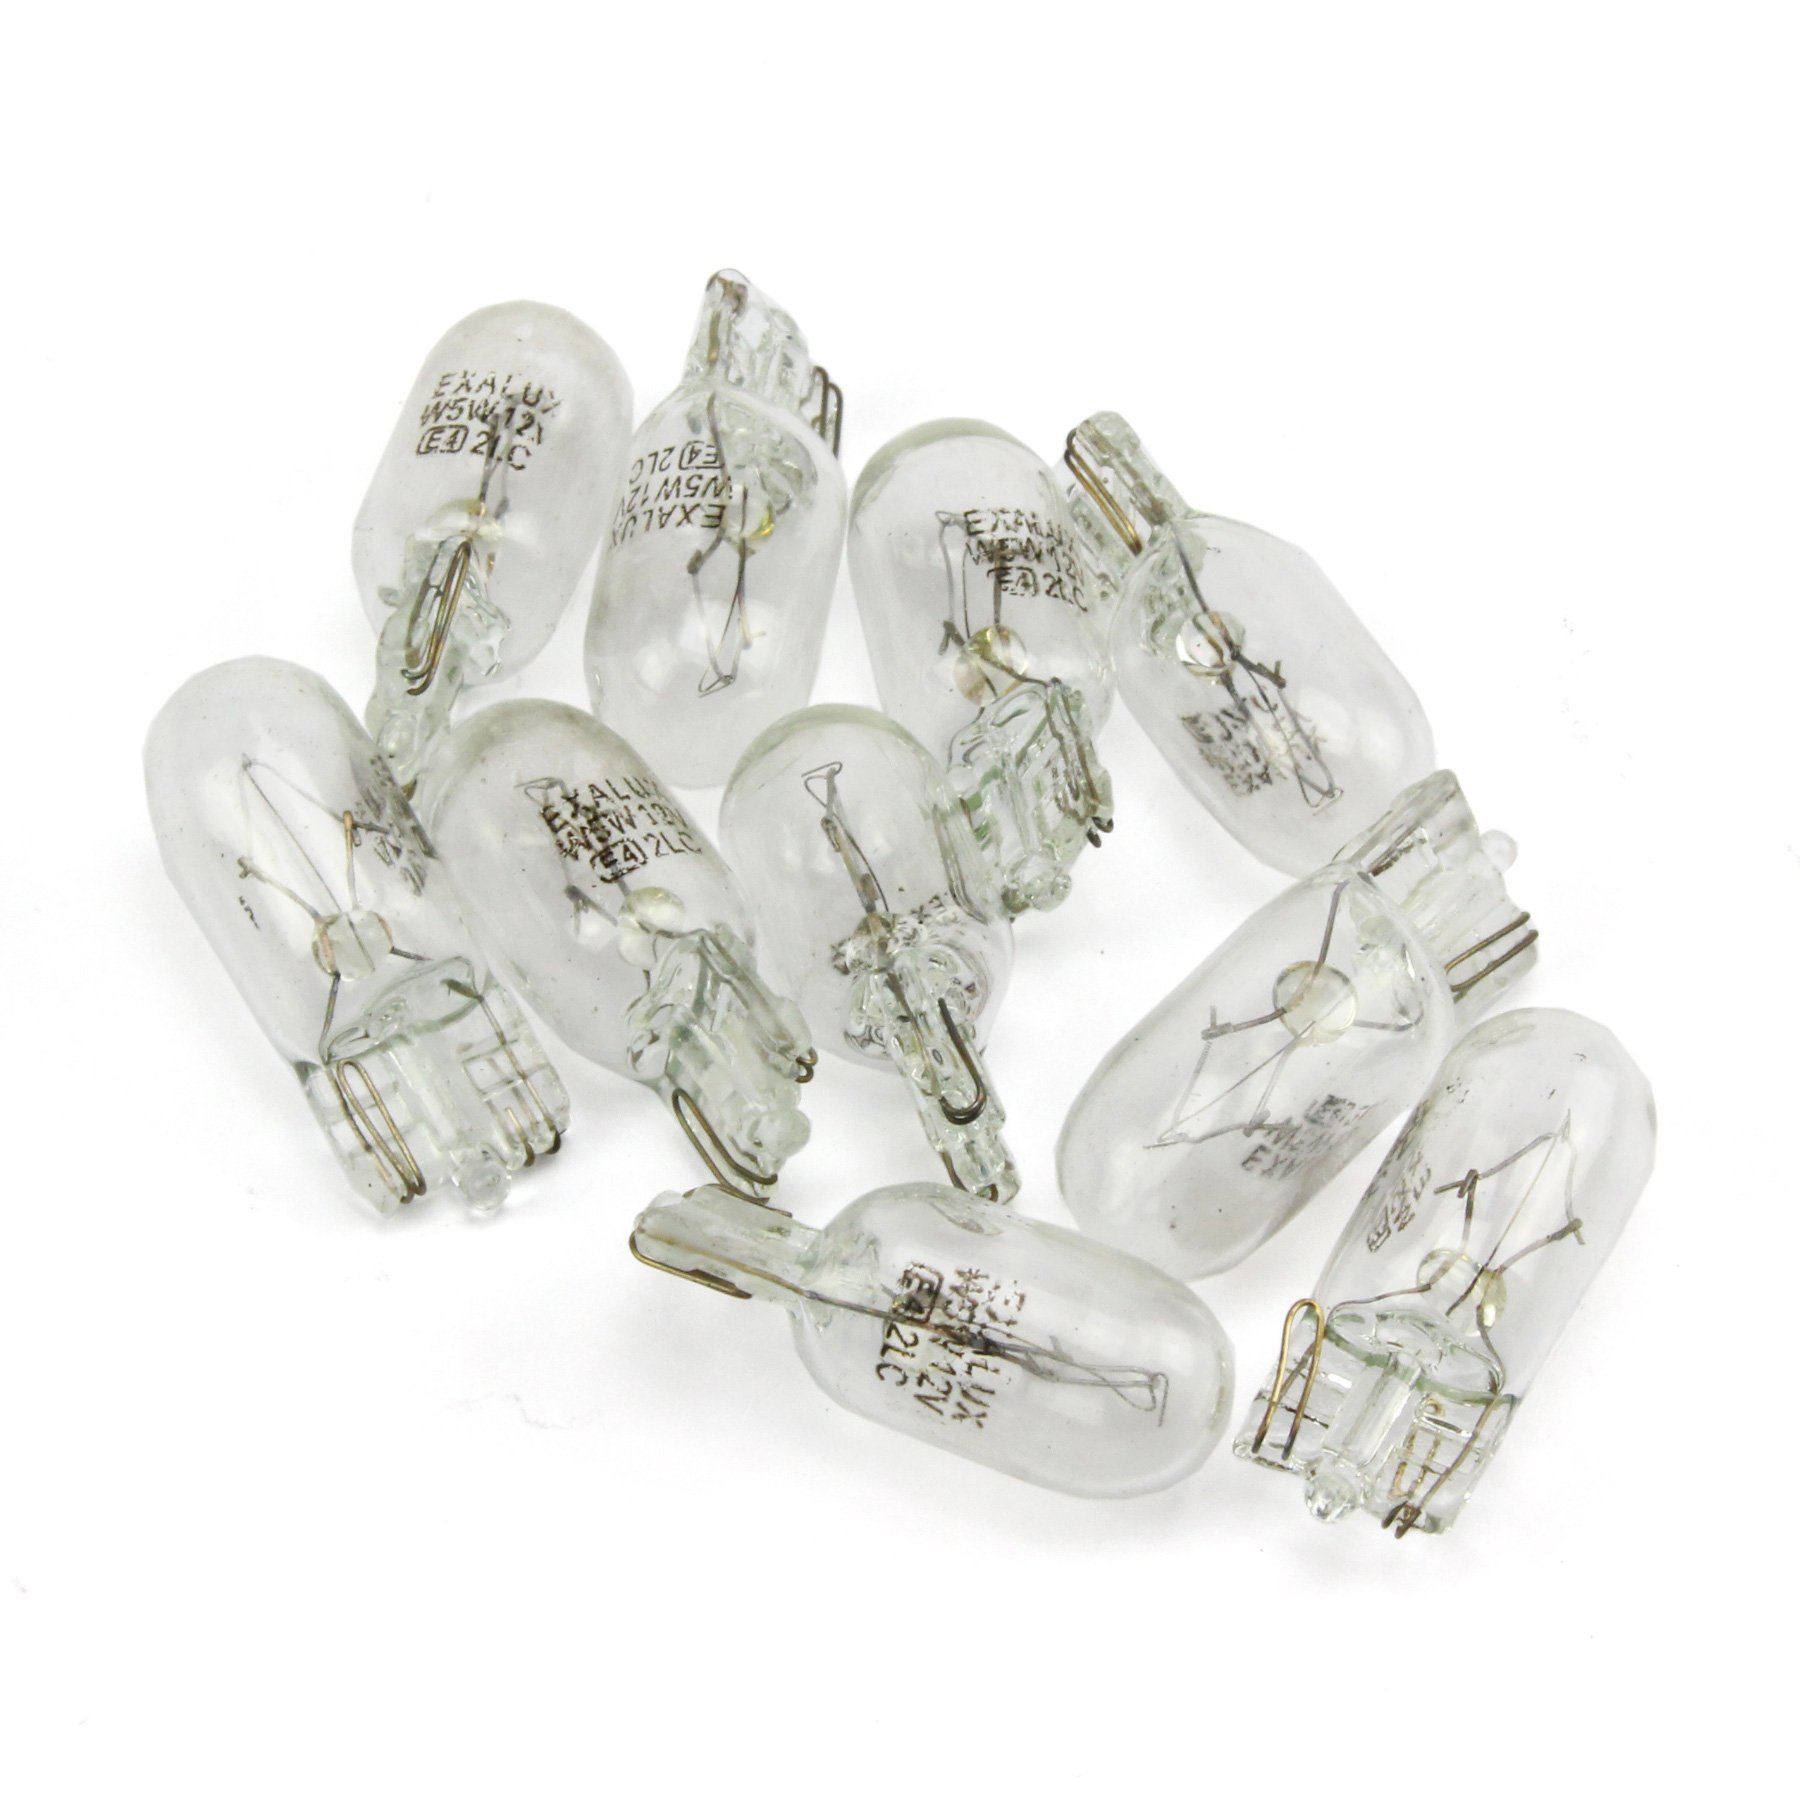 INION® 10 Stück-Set - KFZ Beleuchtung * PROFIPRODUKT * Glassockel Halogen 12V Autolampen (10x W5W) von INION